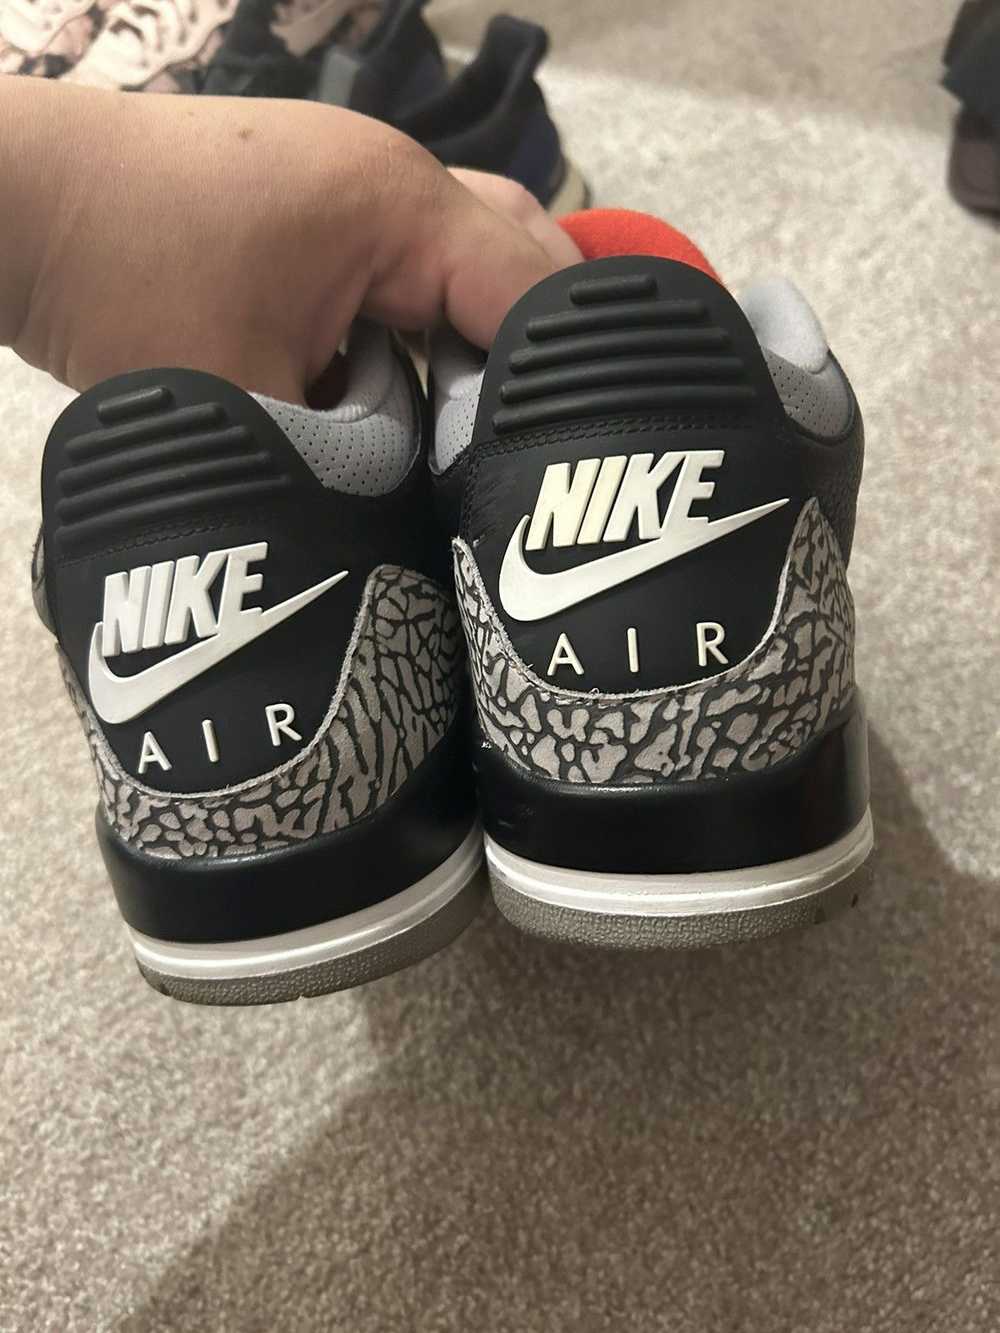 Jordan Brand Nike air Jordan black cement 3s 2018 - image 4